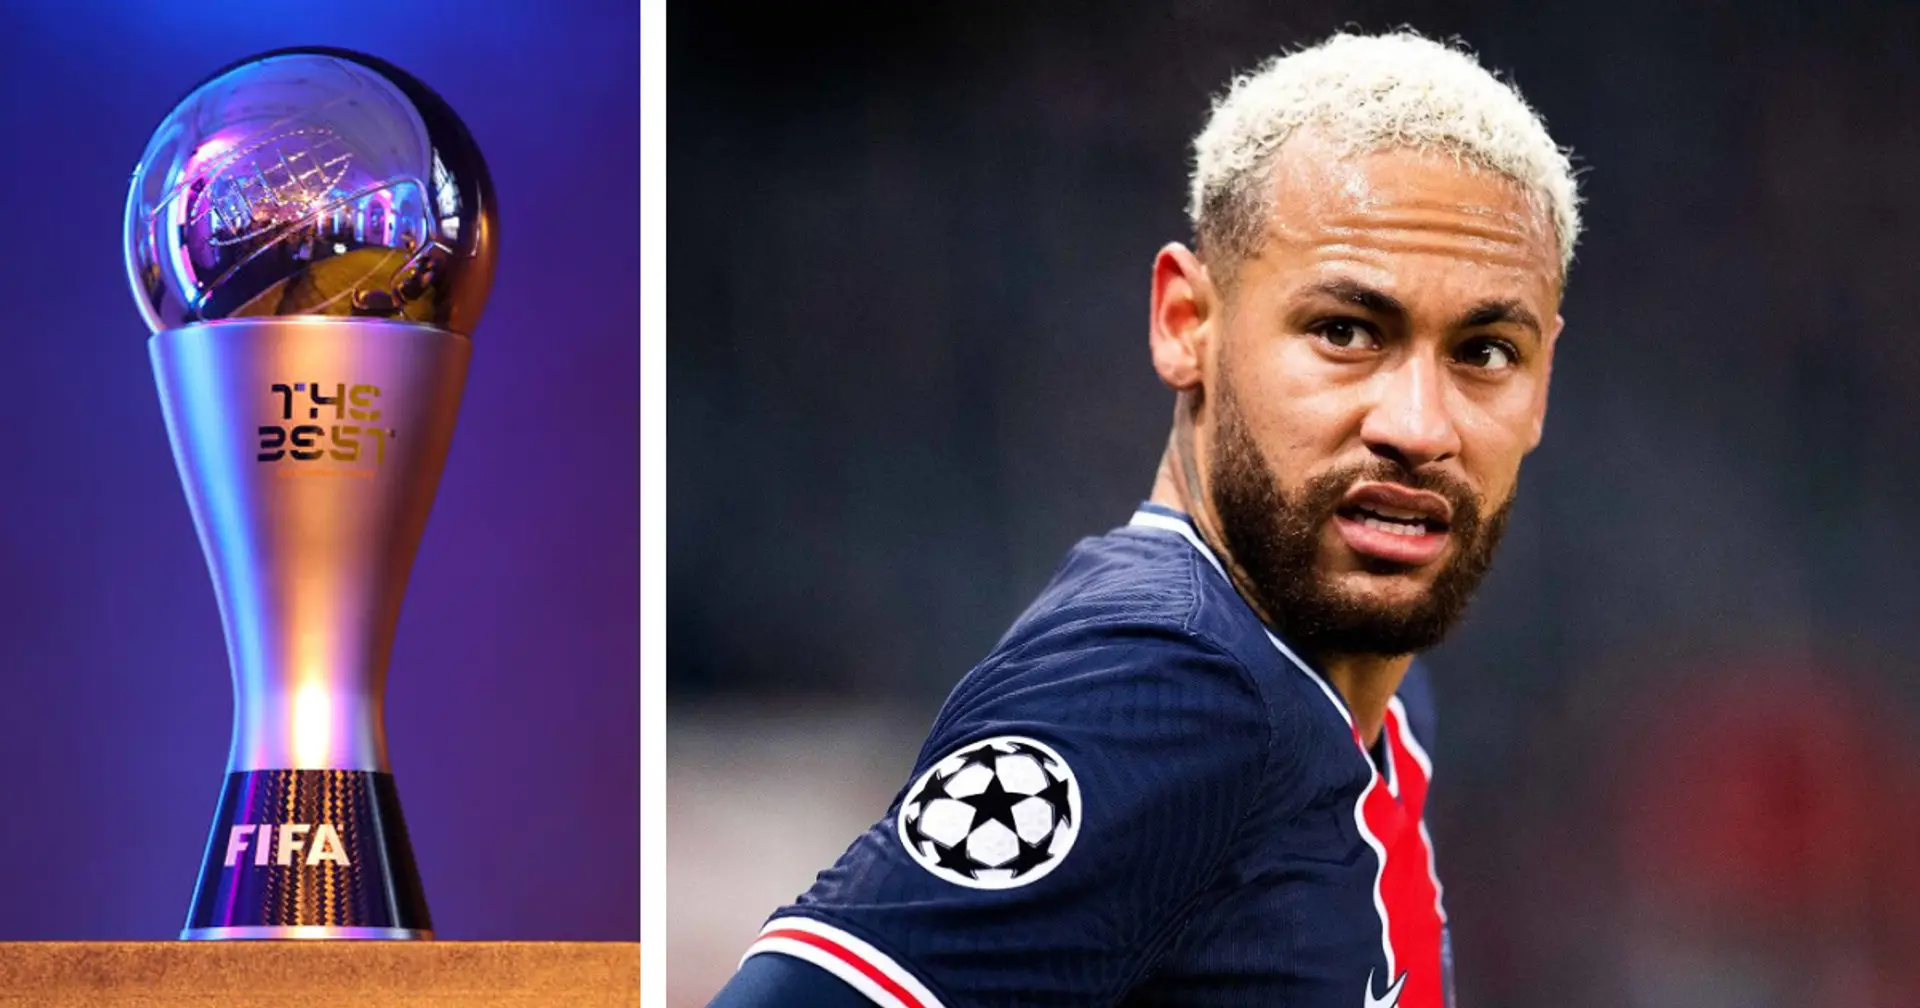 ⚡ Trophée FIFA "The Best": les 3 finalistes de 2020 sont connus et Neymar n'en fait pas parti